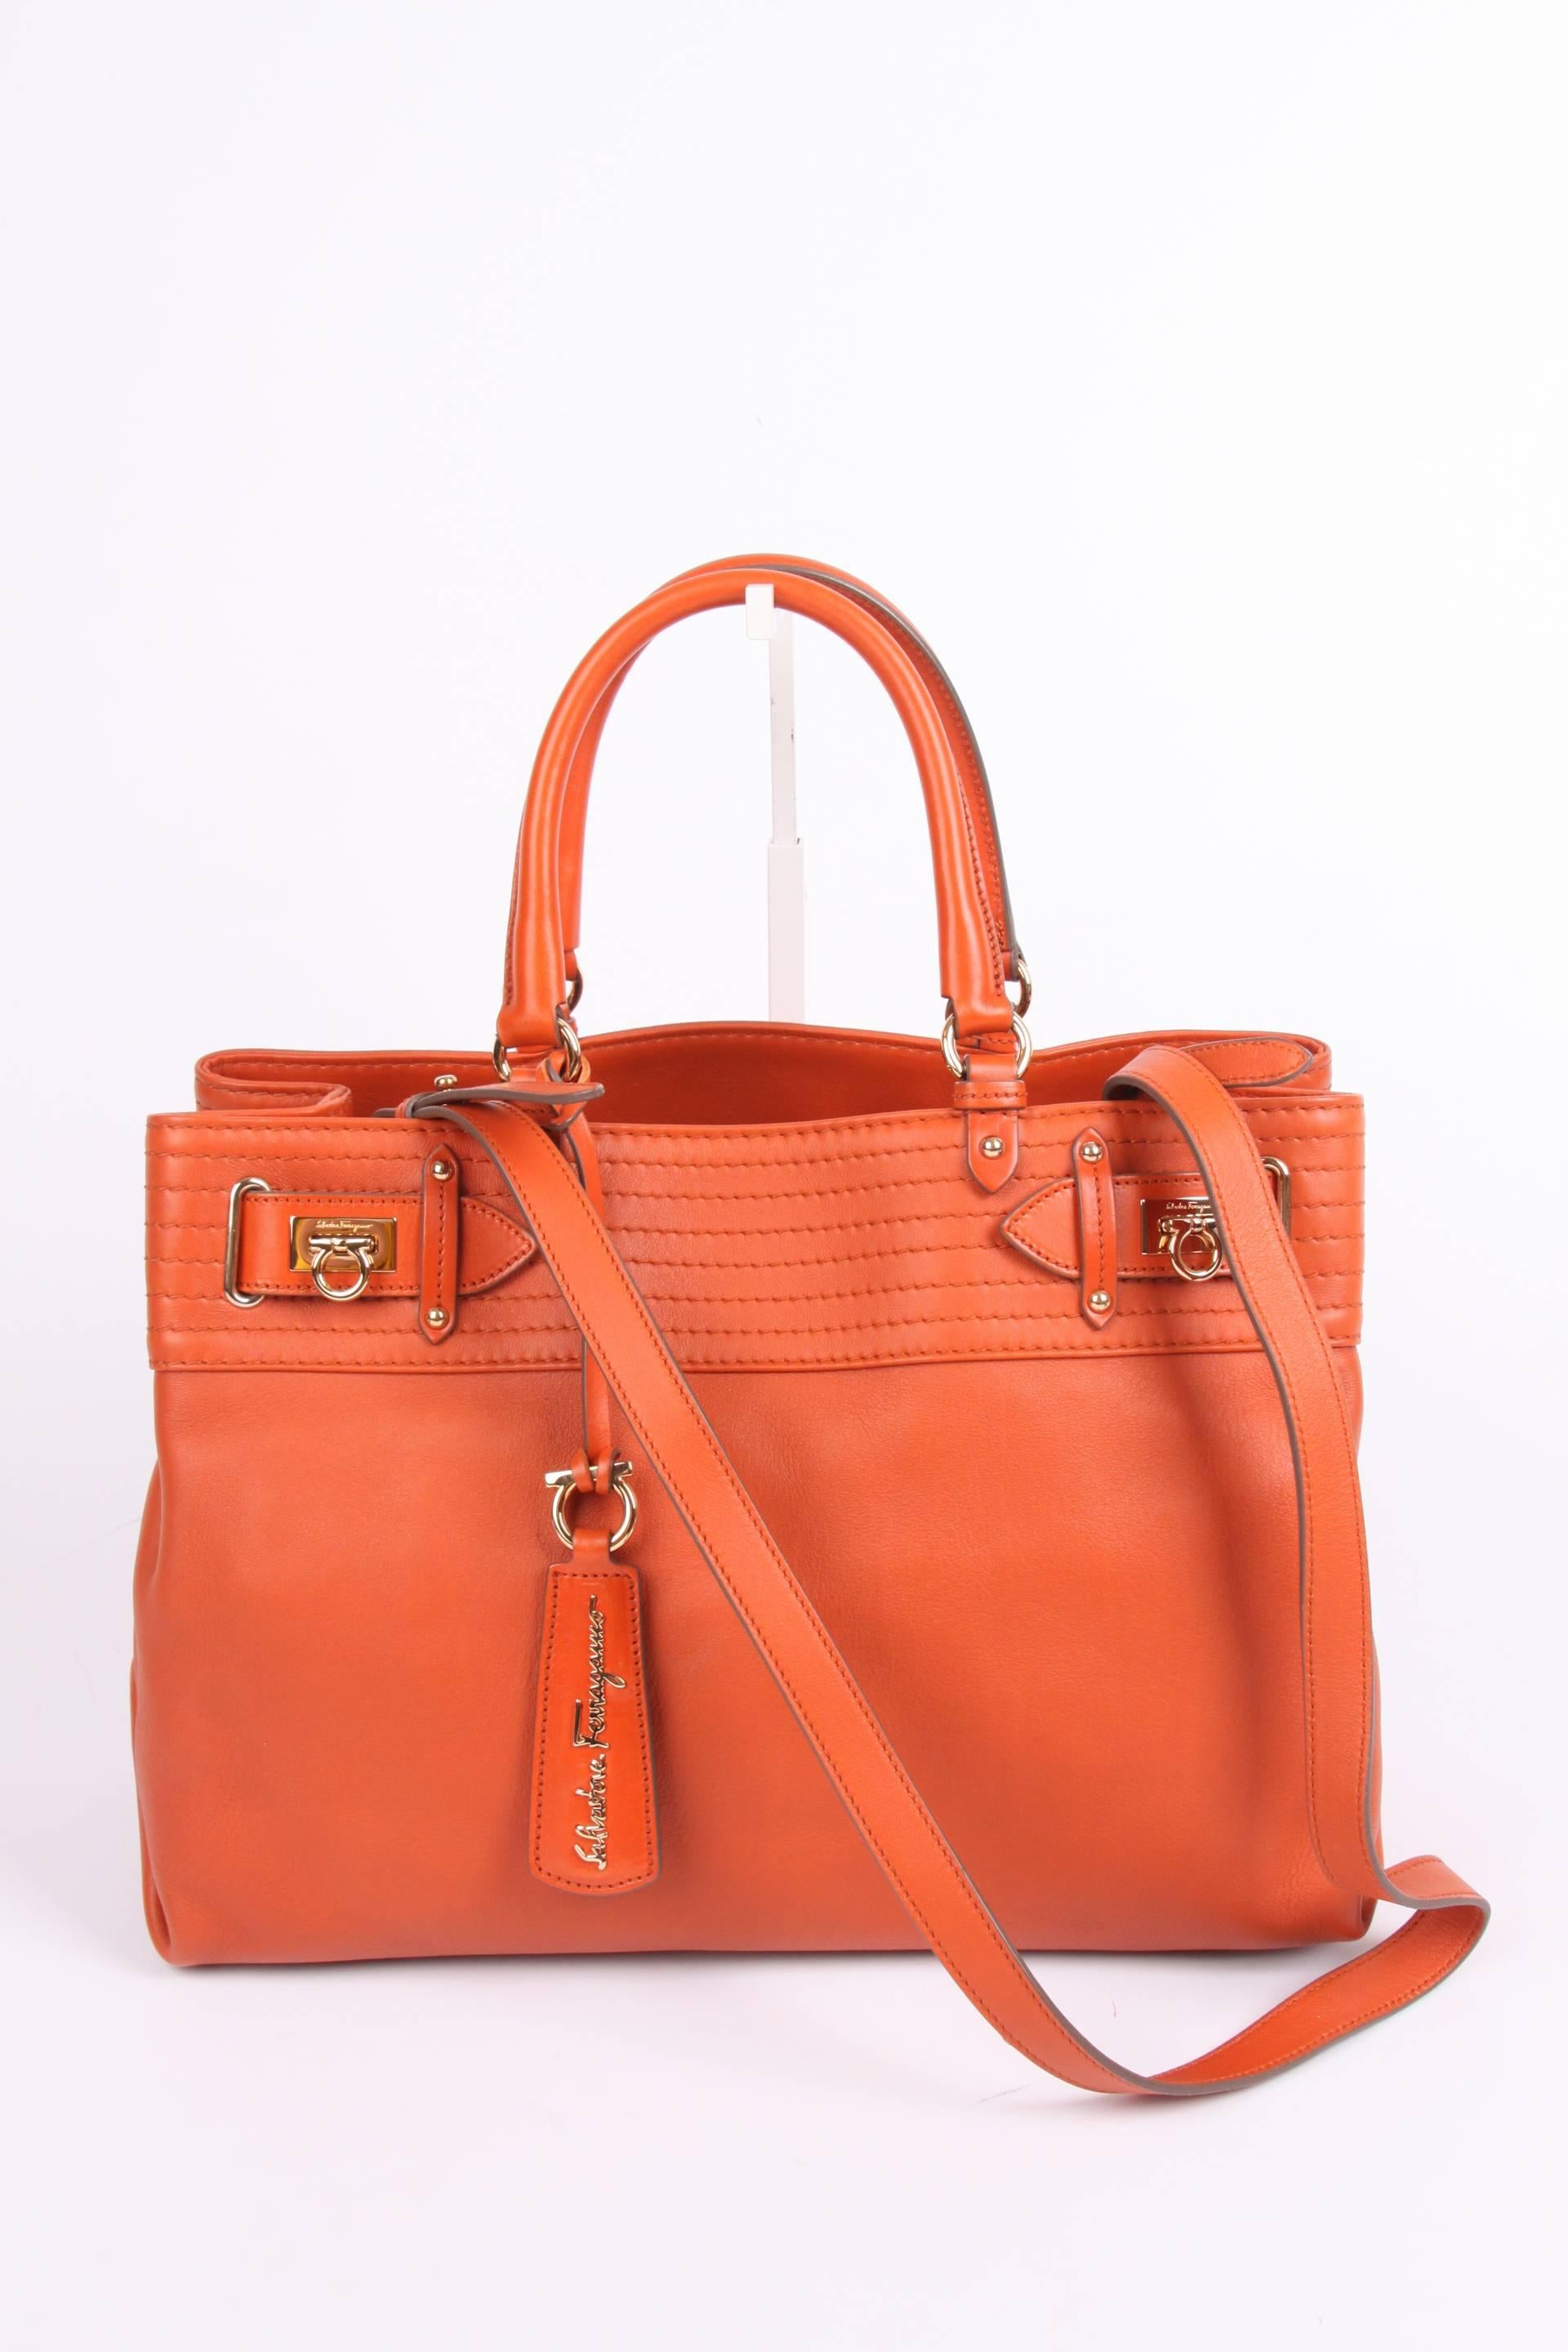 Salvatore Ferragamo Leather Buckled Tote Bag Visone - orange  5